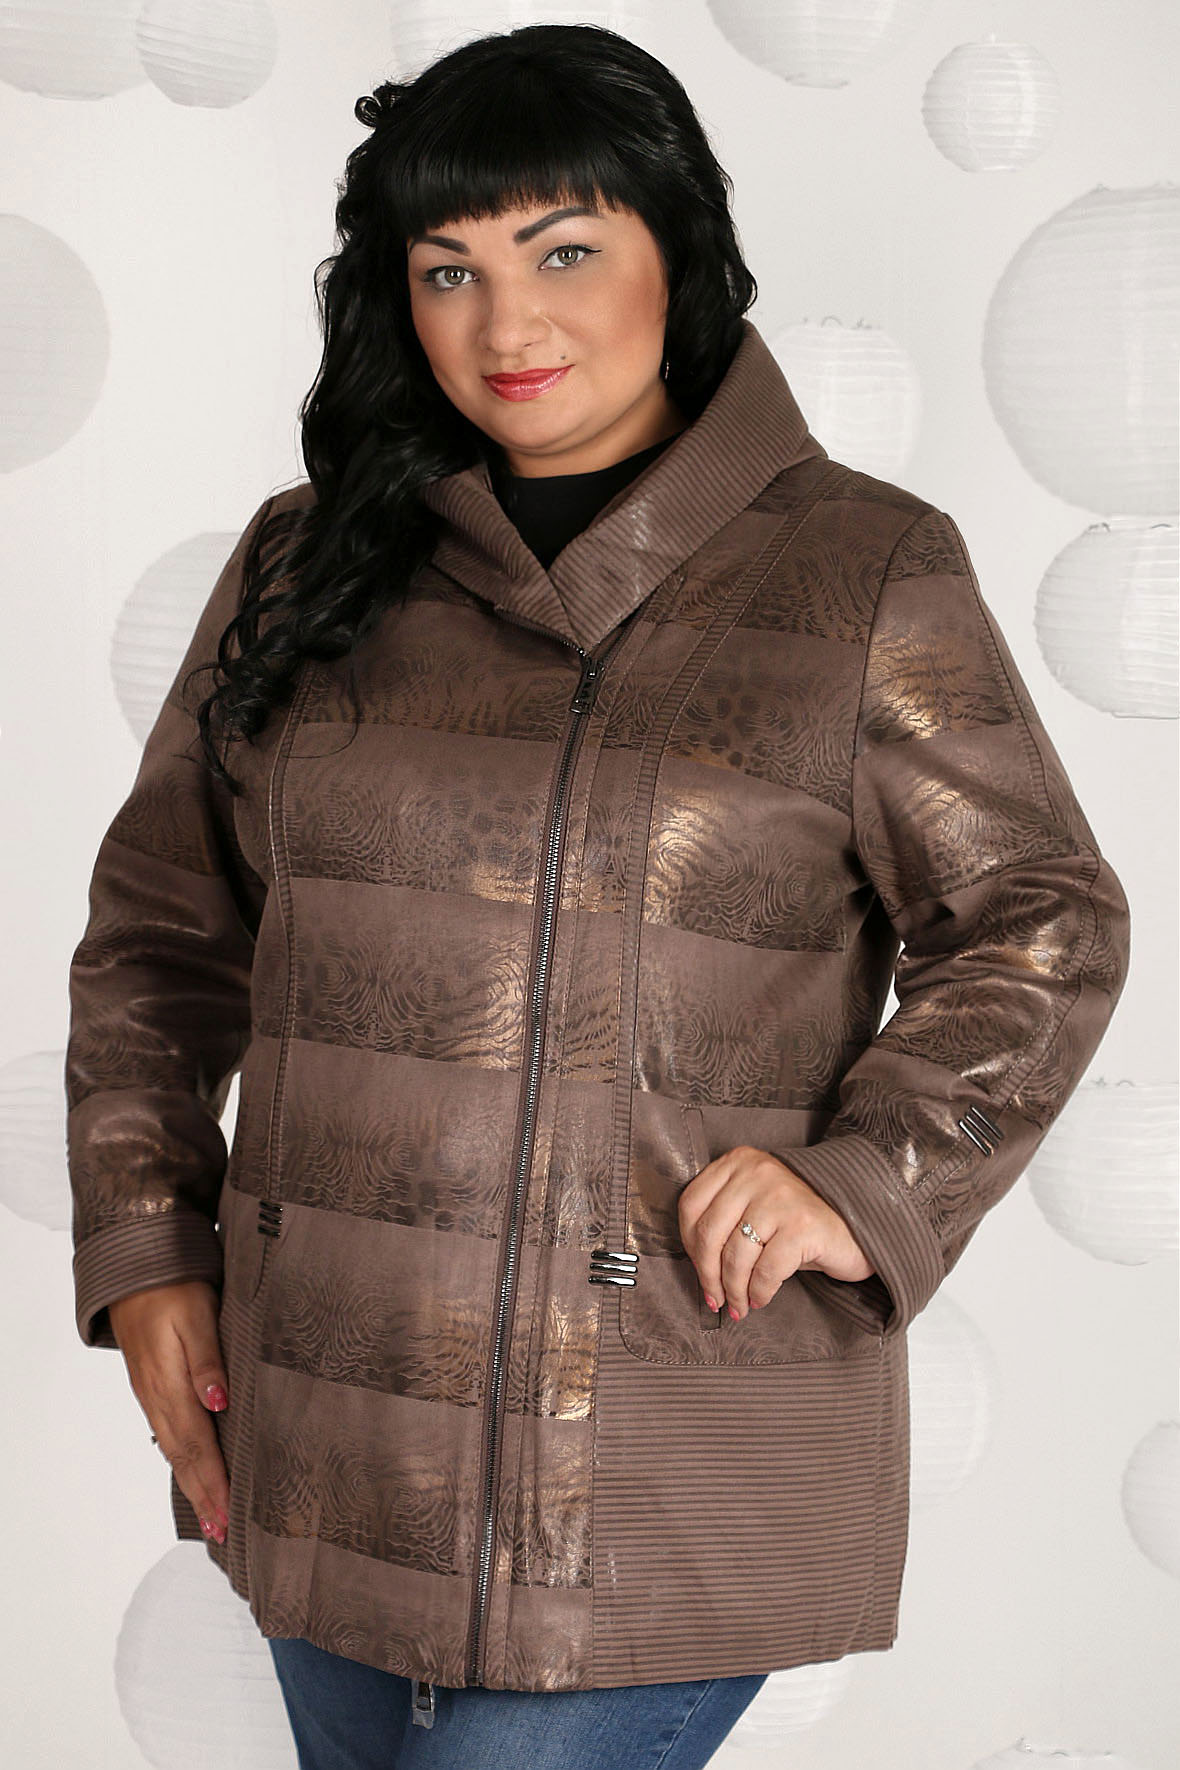 Кожаная куртка женская AlmondShop 026 1711.1.С1 коричневая 68 RU - купить в AlmondShop, цена на Мегамаркет